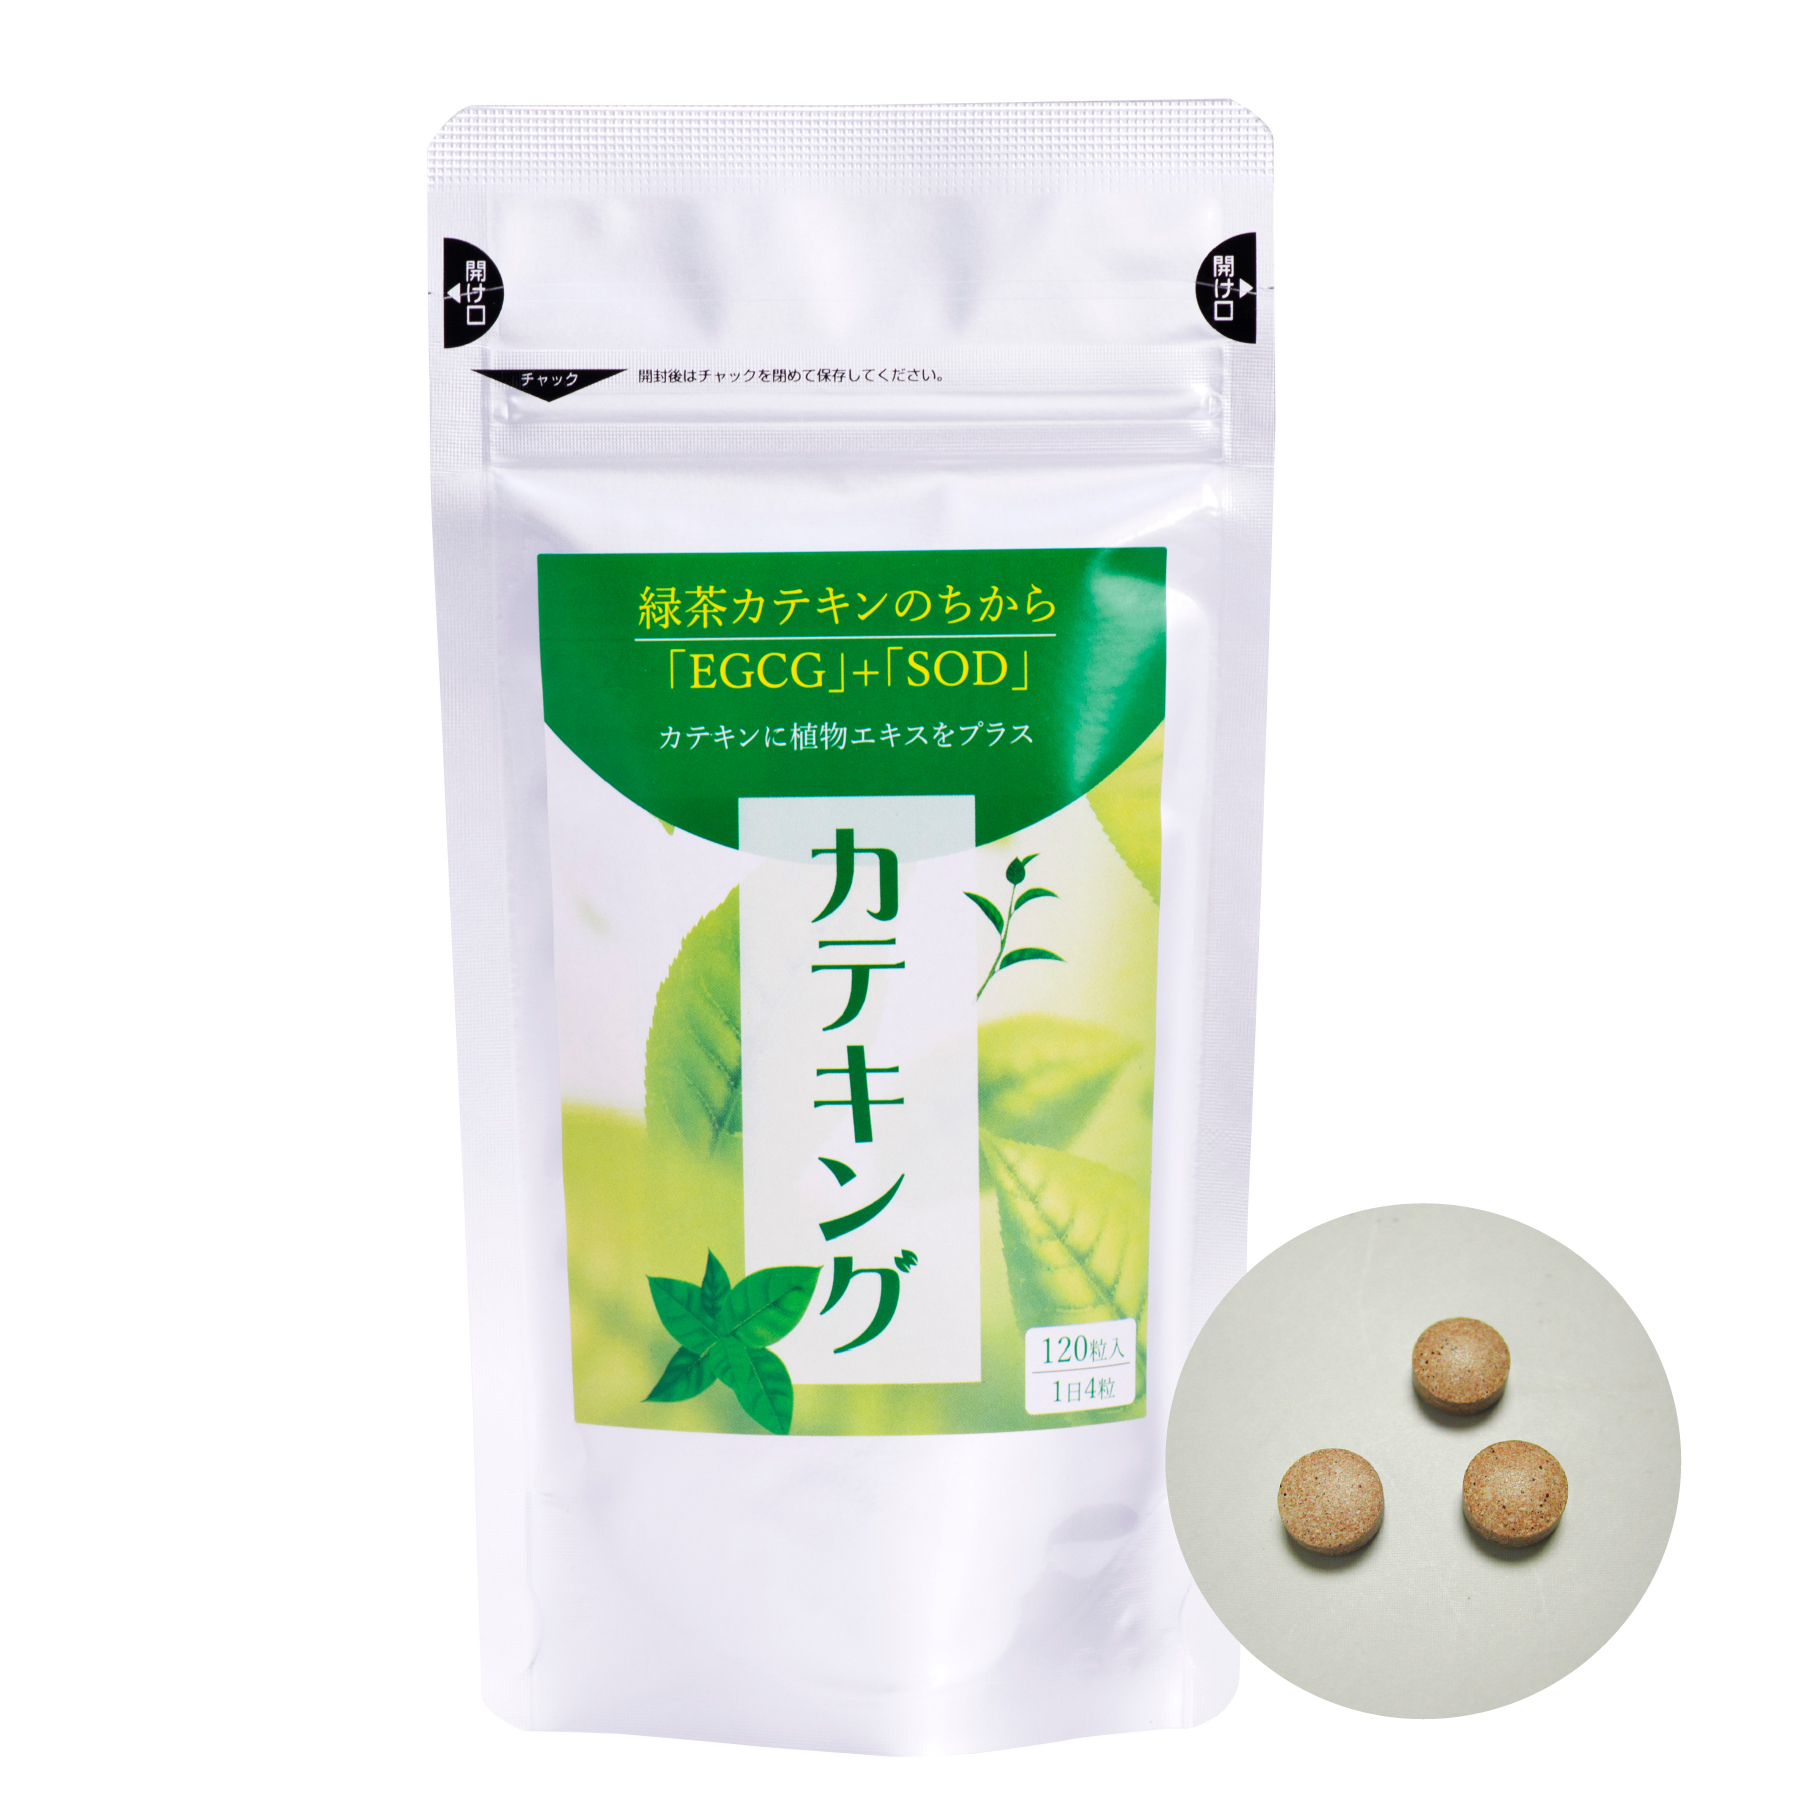 健康食品ラインナップ | 株式会社日本健康美容開発 | スキンケア製品